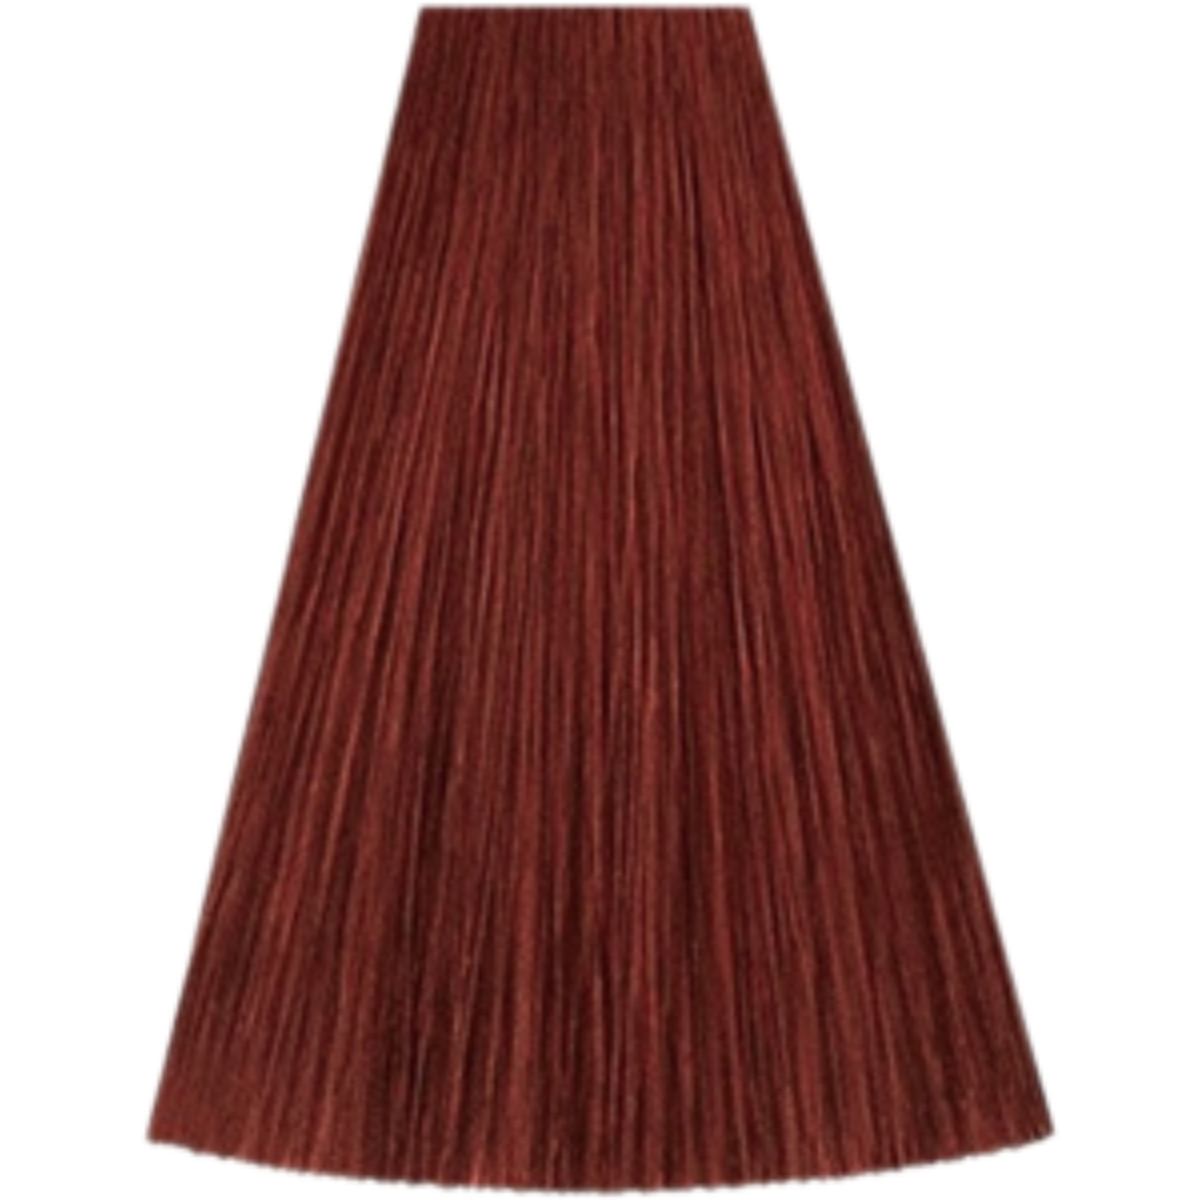 צבע שיער גוון 7/44 MEDIUM BLONDE INTENSE RED קאדוס KADUS צבע לשיער 60 גרם